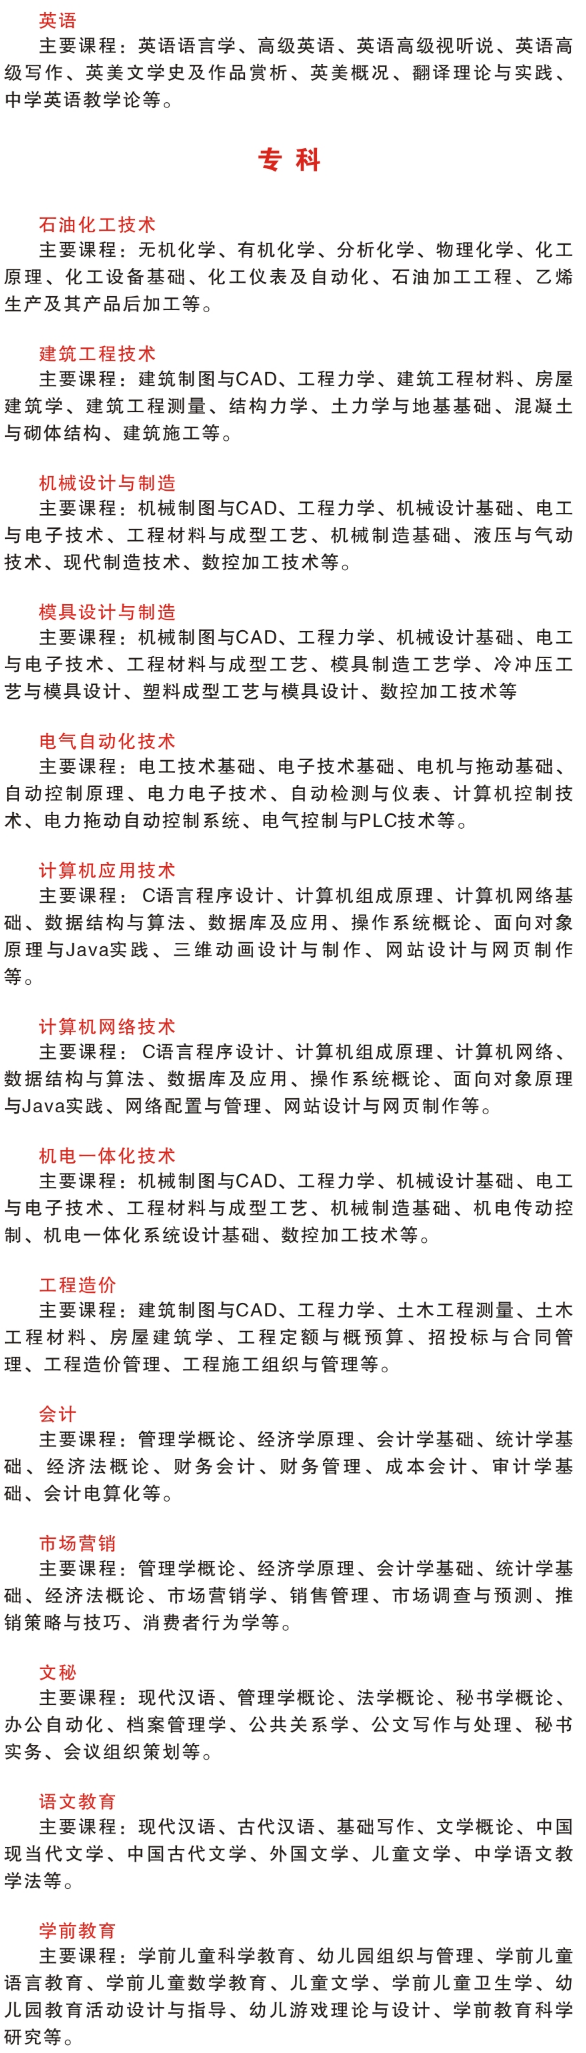 广东石油化工学院2020年成人高考招生简章(图5)